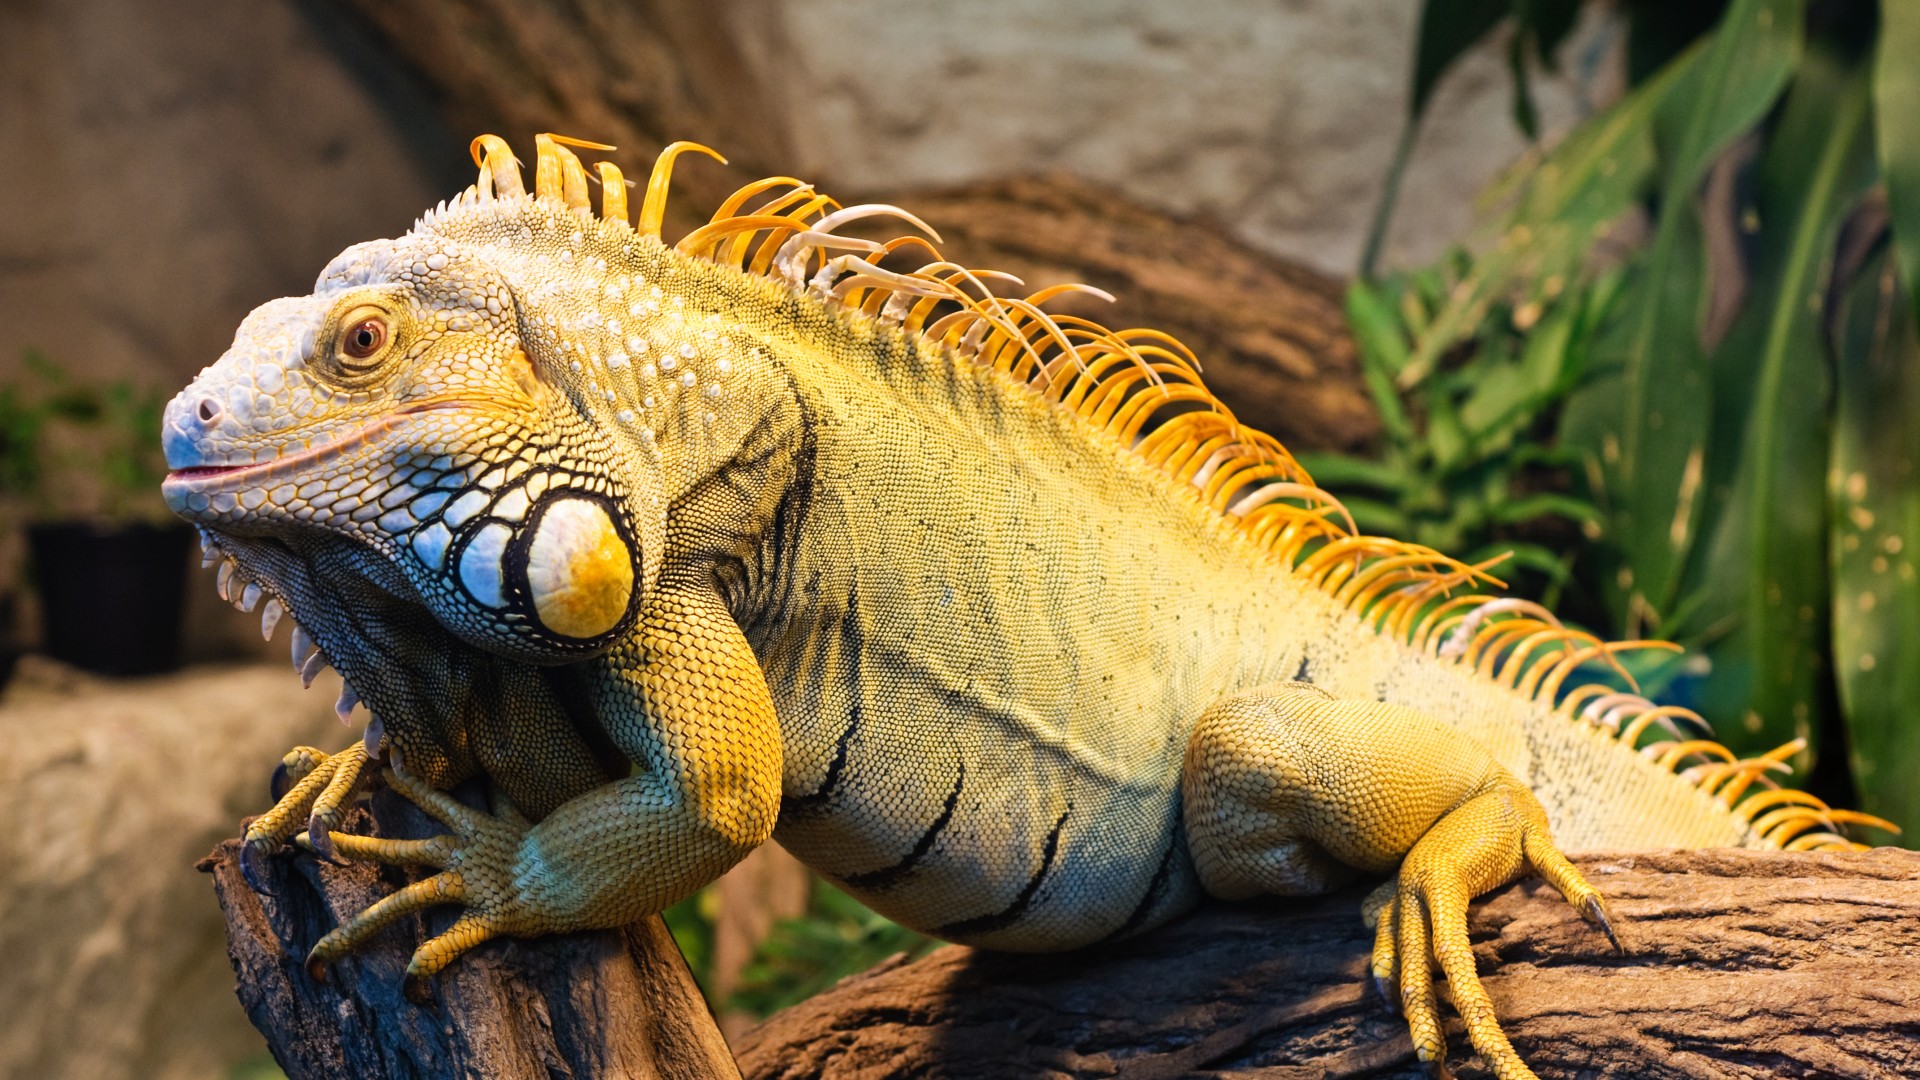 Iguana, Green Iguana, San Diego, USA, zoo, reptile, tourism (horizontal)